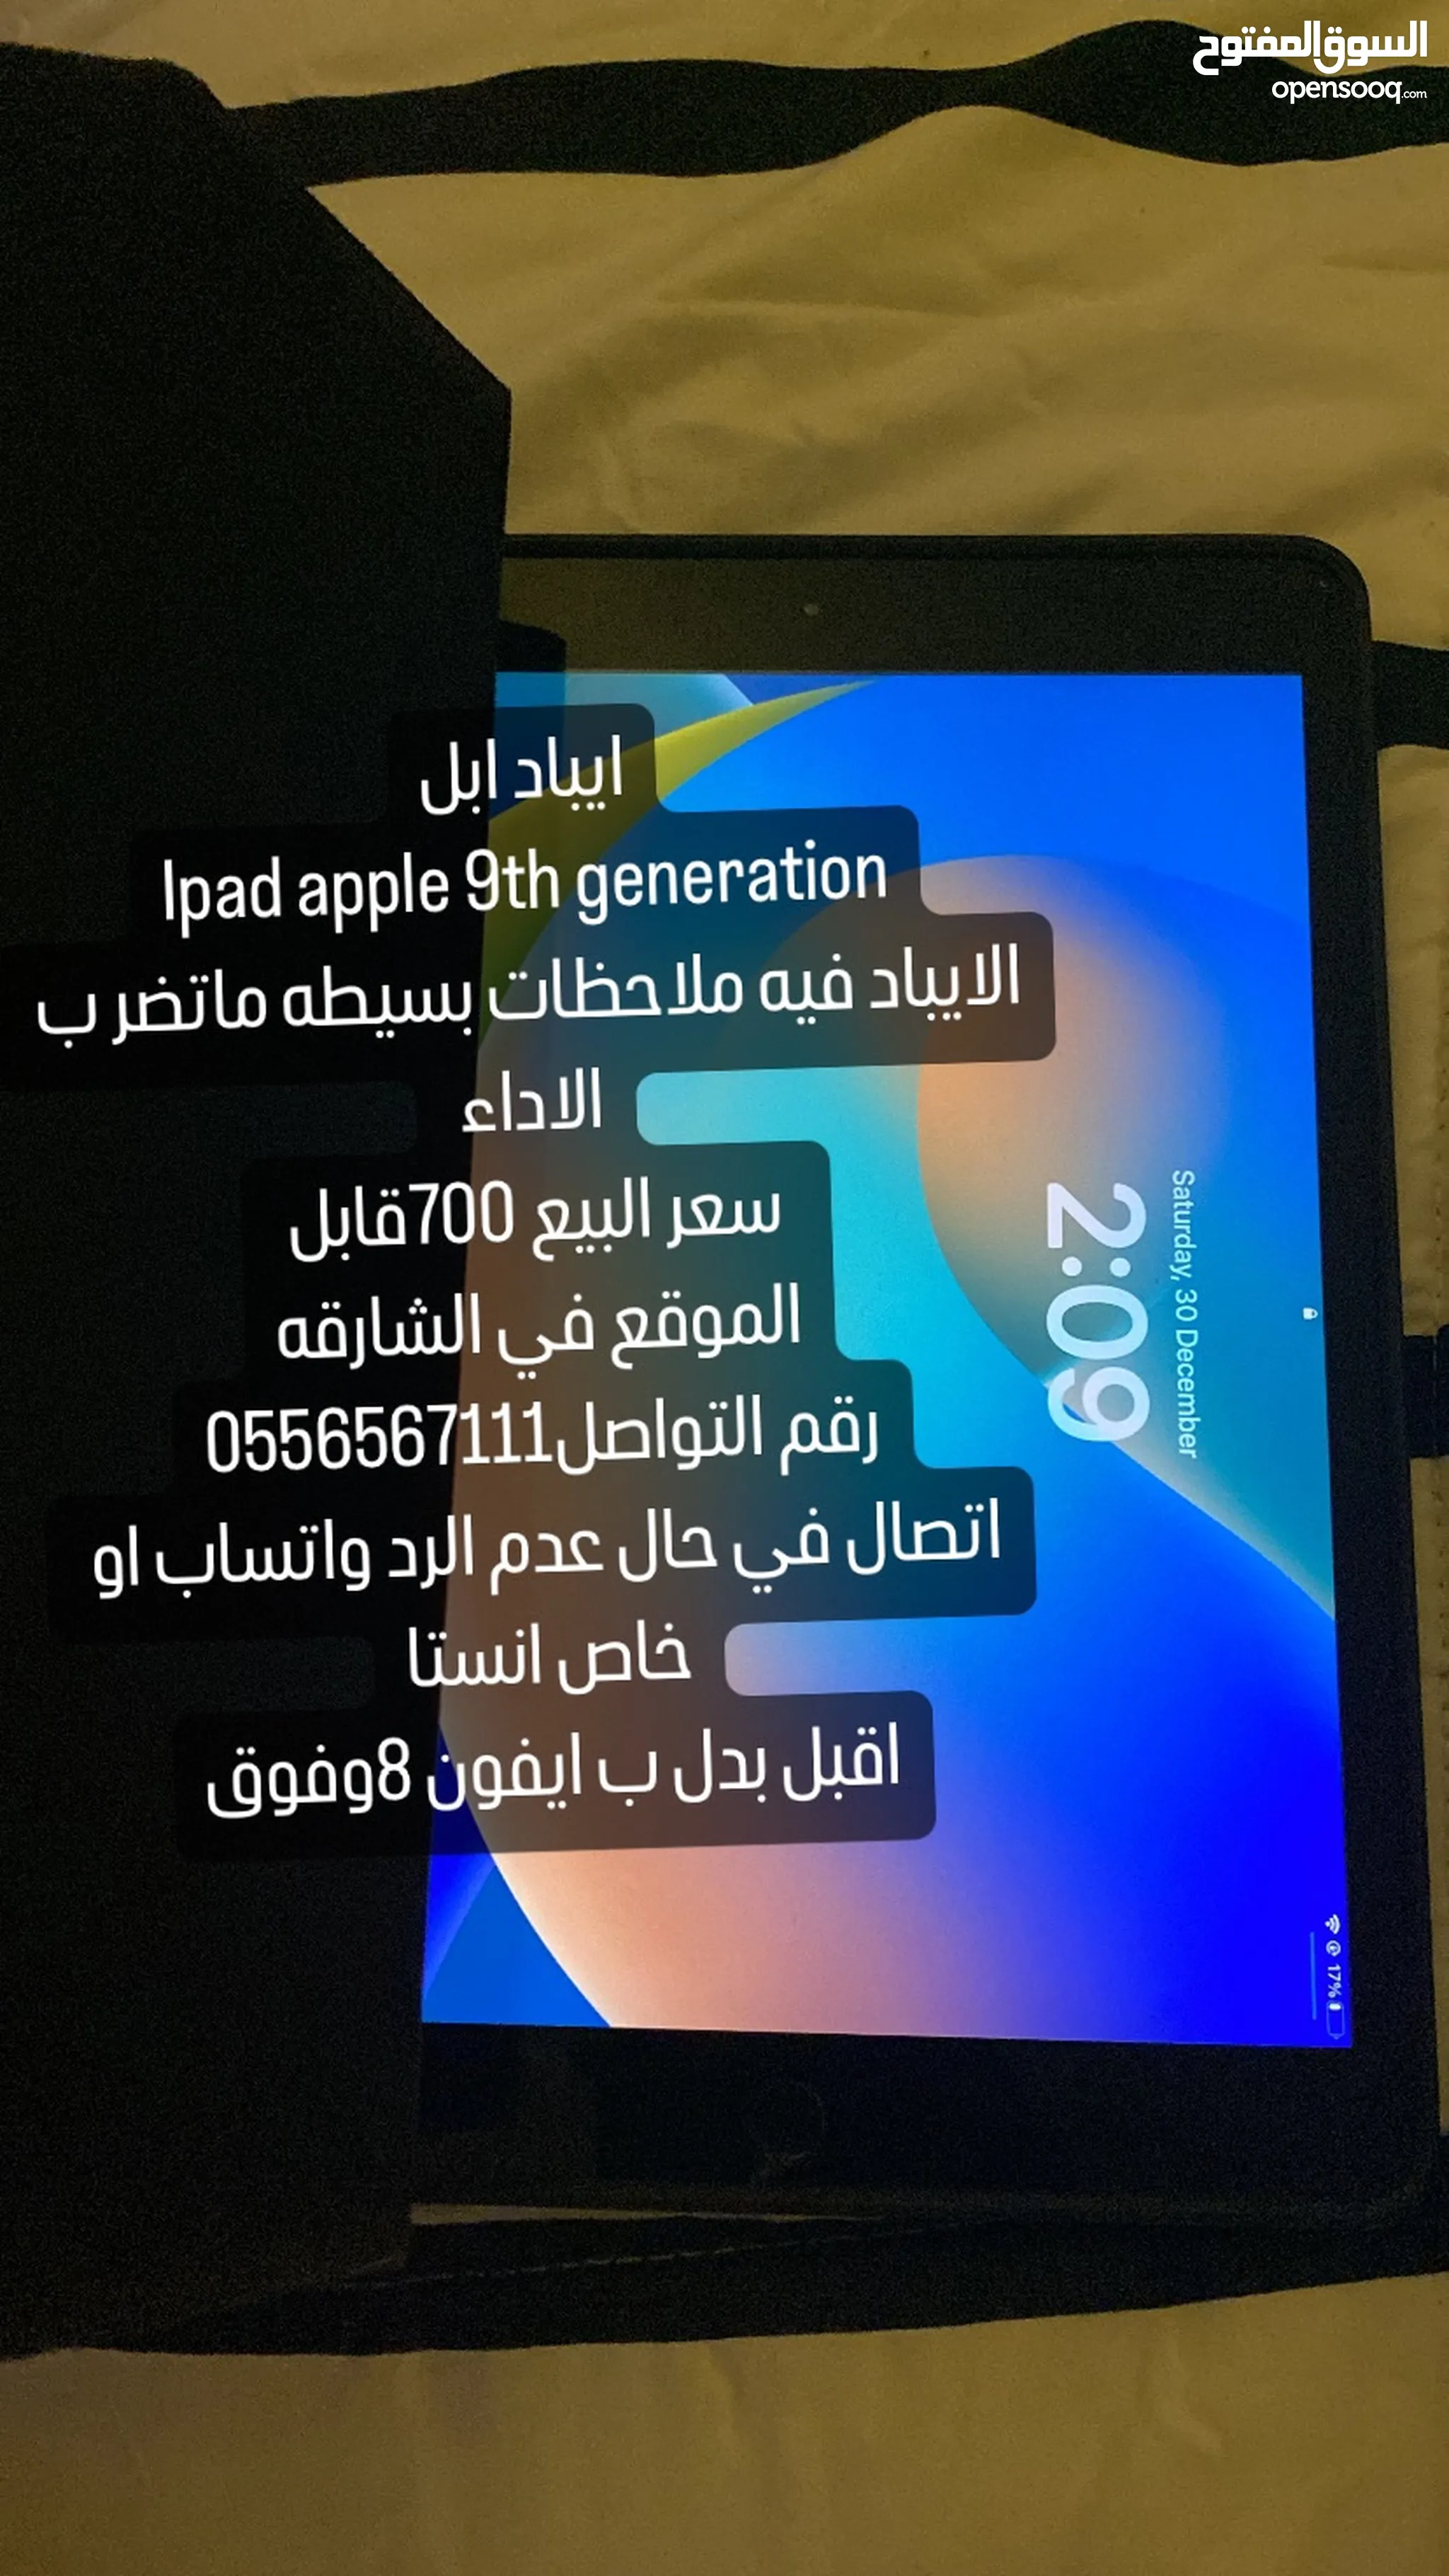 تابلت أبل ايباد 9 64 جيجابايت للبيع في الإمارات | السوق المفتوح